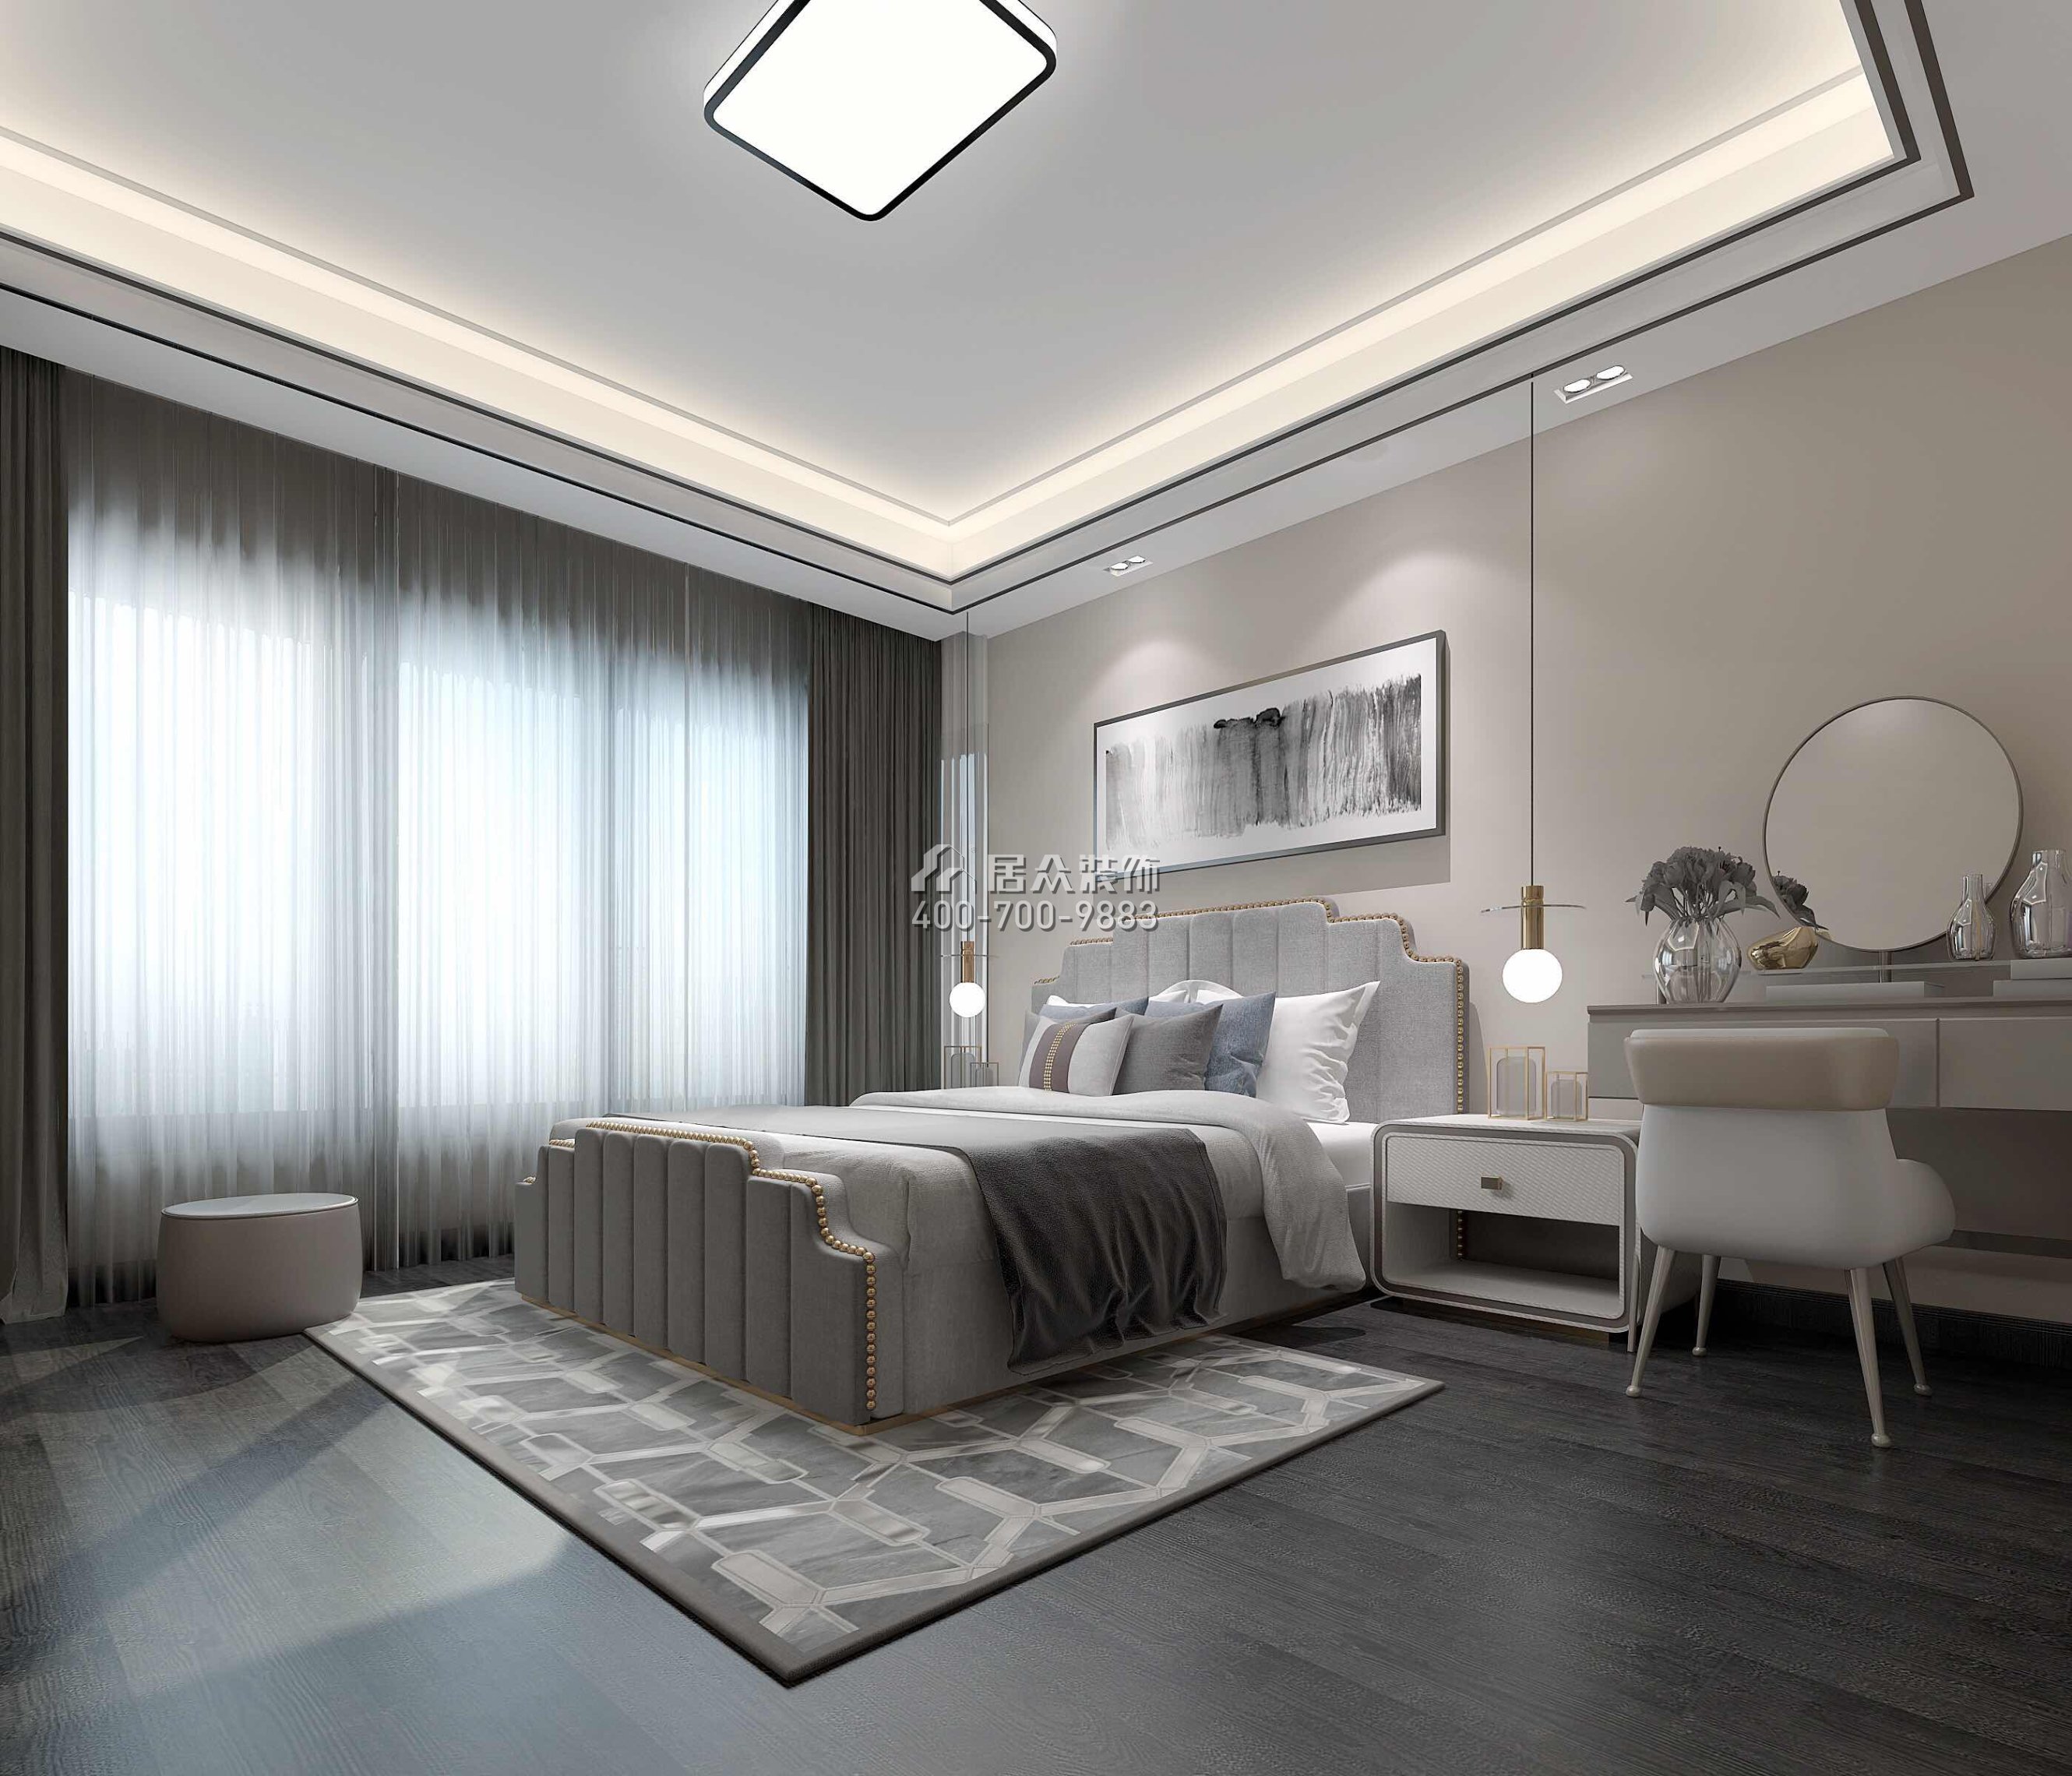 星河丹堤152平方米现代简约风格平层户型卧室装修效果图